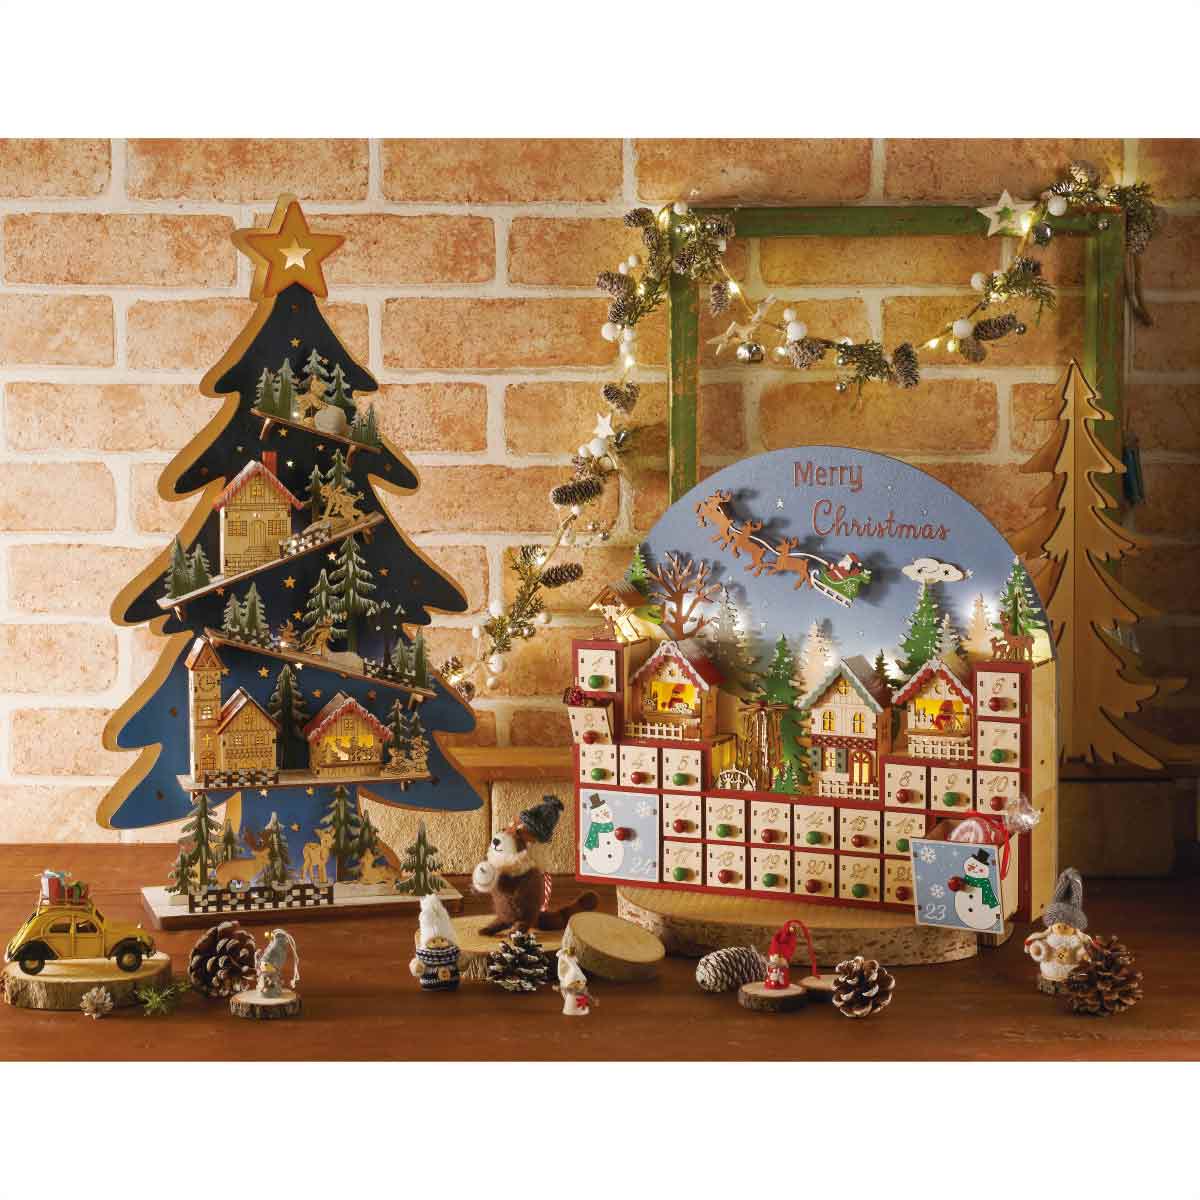 クリスマス装飾用品 アドベントカレンダーハウス ミニリース ミニツリー